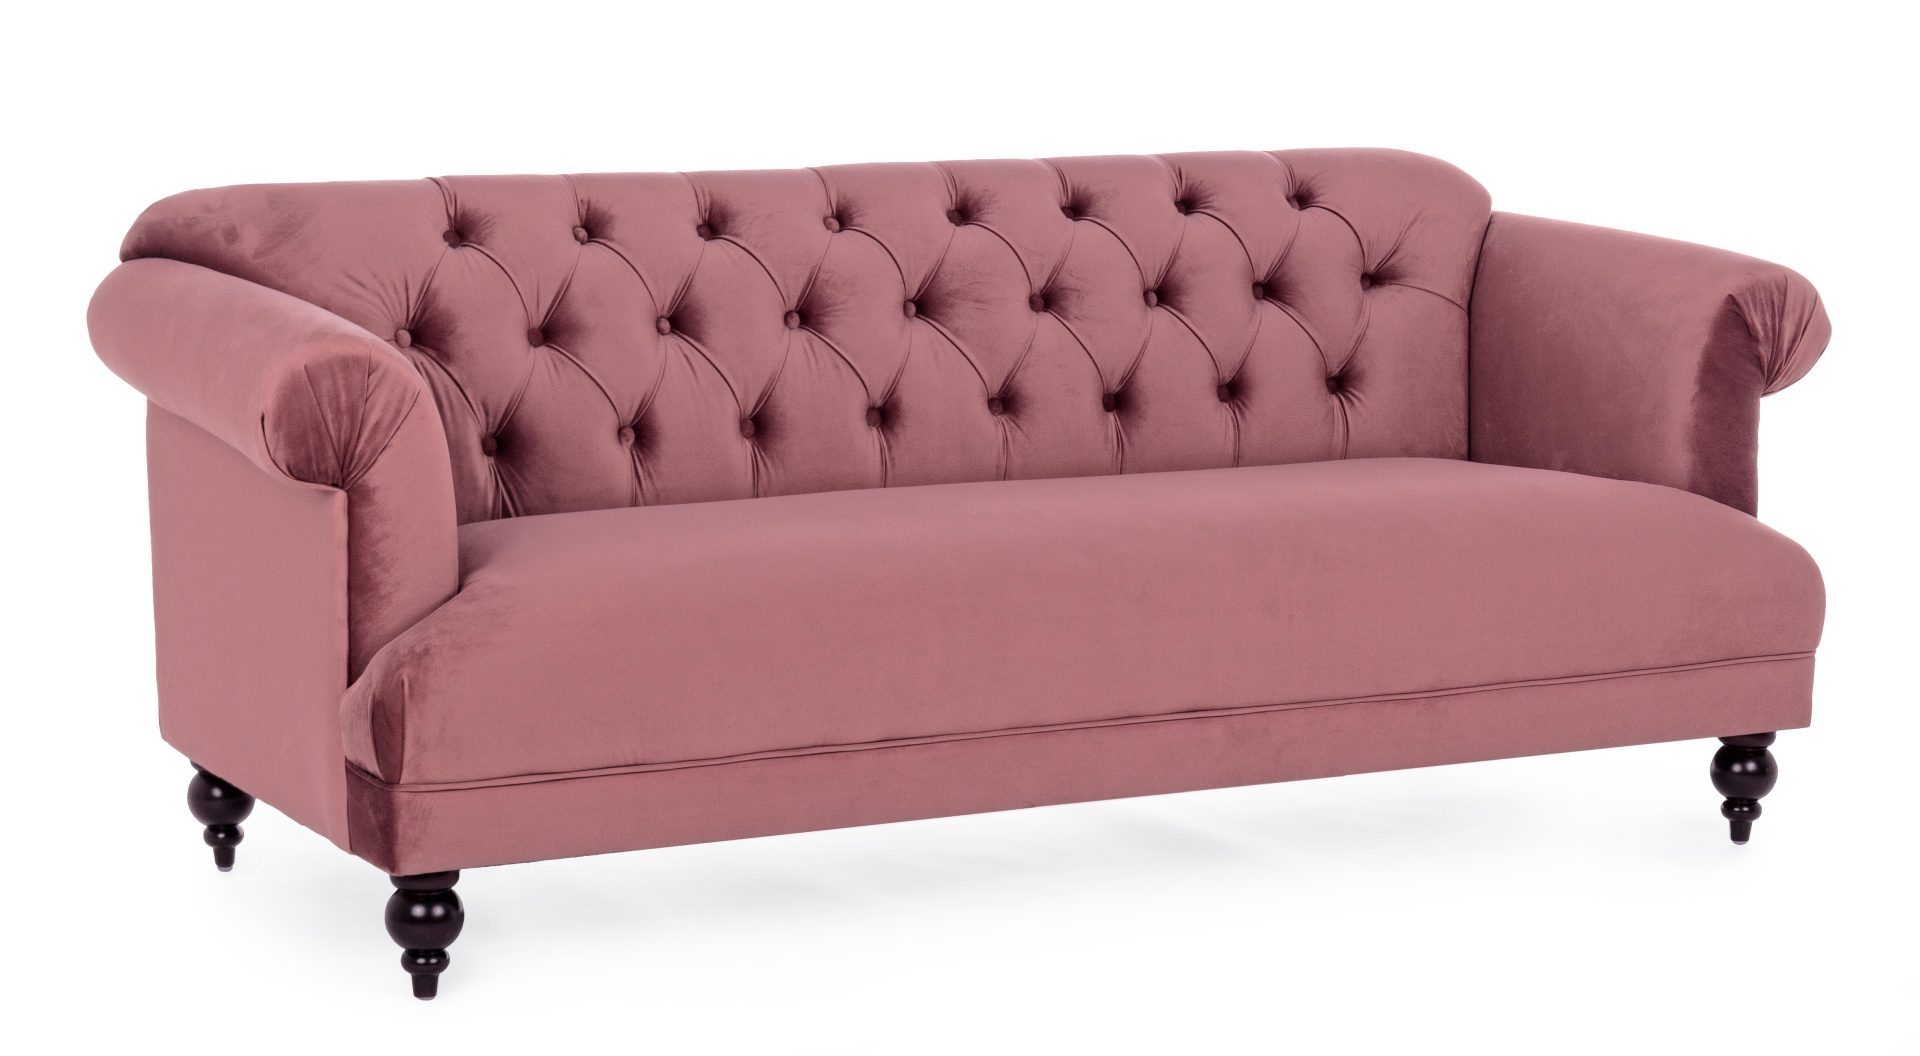 Das Sofa Blossom überzeugt mit seinem klassischen Design. Gefertigt wurde es aus Stoff in Samt-Optik, welcher einen rosa Farbton besitzt. Das Gestell ist aus Kautschukholz und hat eine schwarze Farbe. Das Sofa ist in der Ausführung als 3-Sitzer. Die Breit